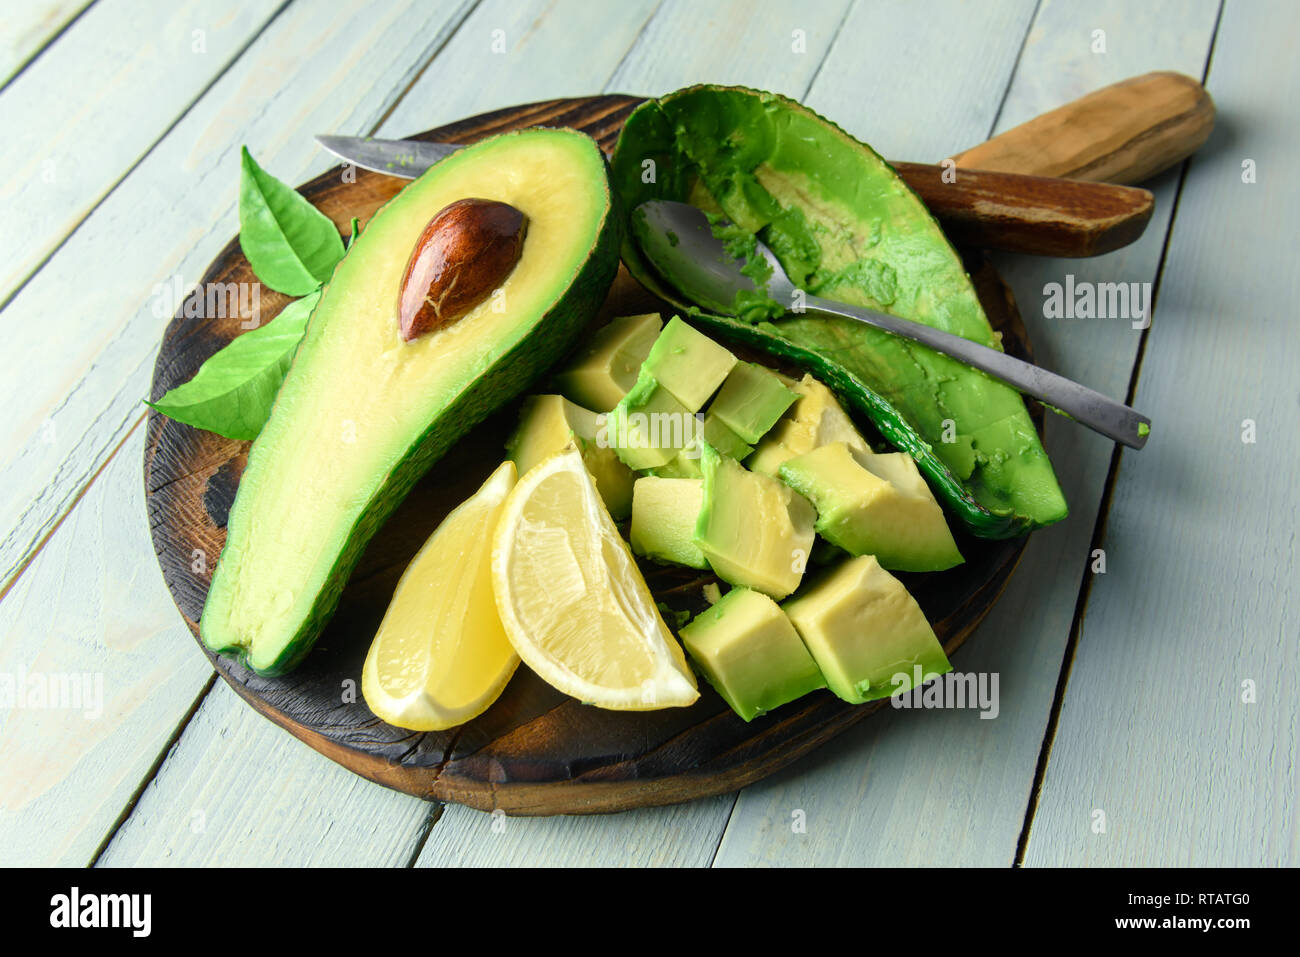 Fresco frutto di avocado su una tavola di legno. Il concetto di mangiare sano. Fotografia di cibo Foto Stock